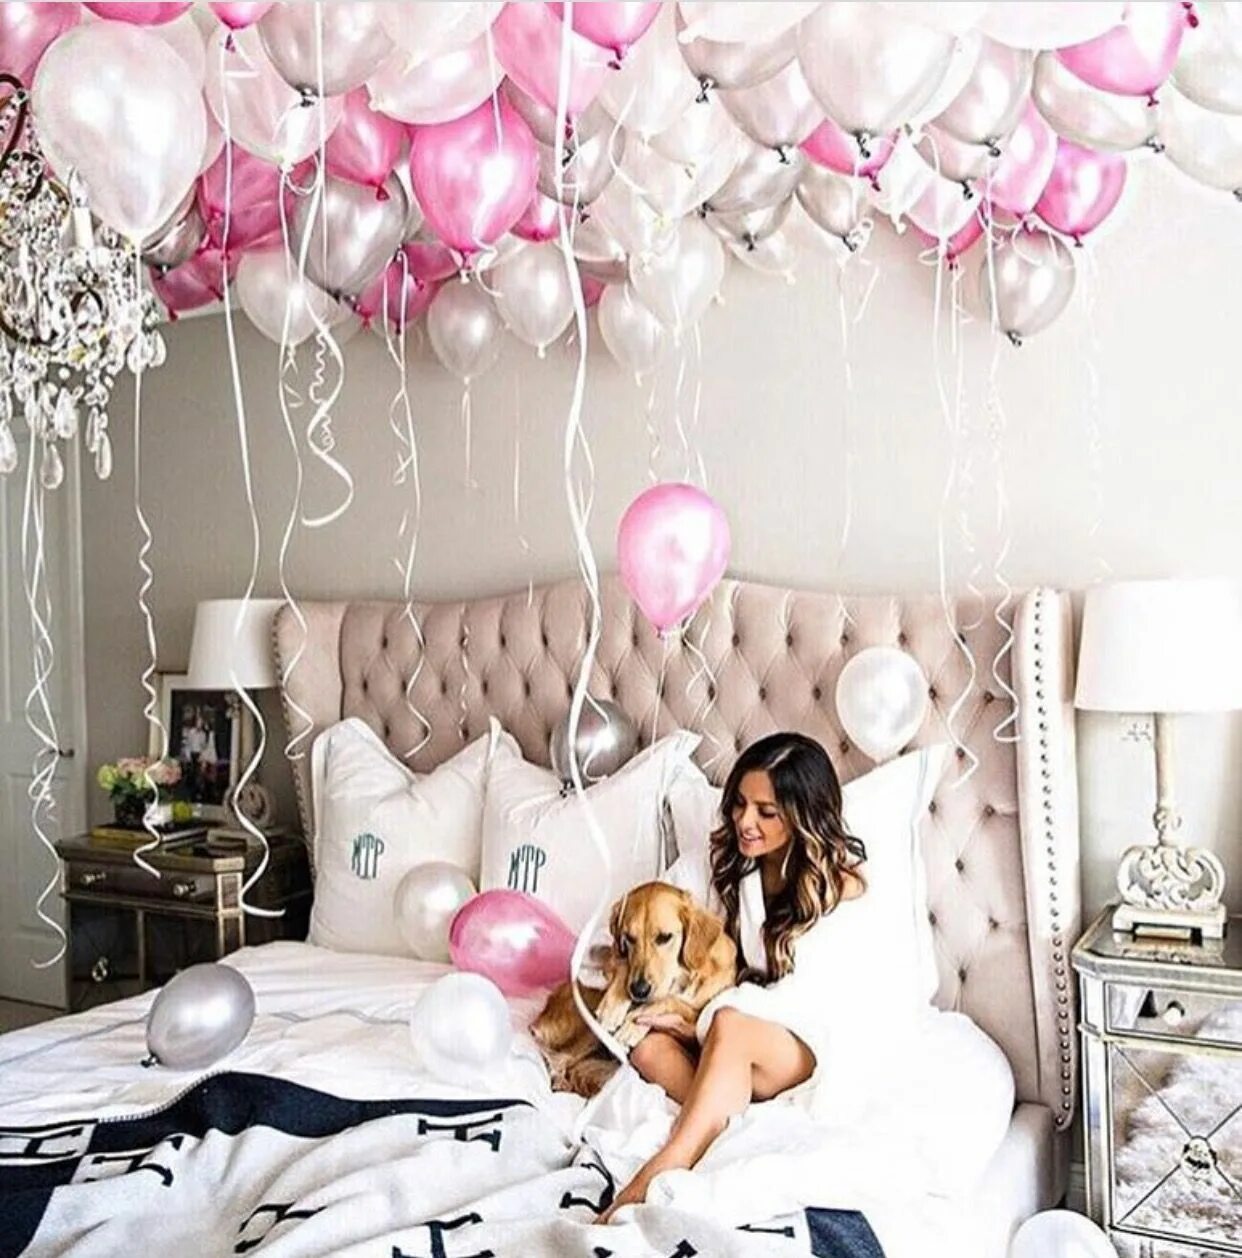 Оригинальное фото на день рождения. Украшение шарами. Шары в комнате. Воздушные шары в комнате. Украшение комнаты шарами для девушки.